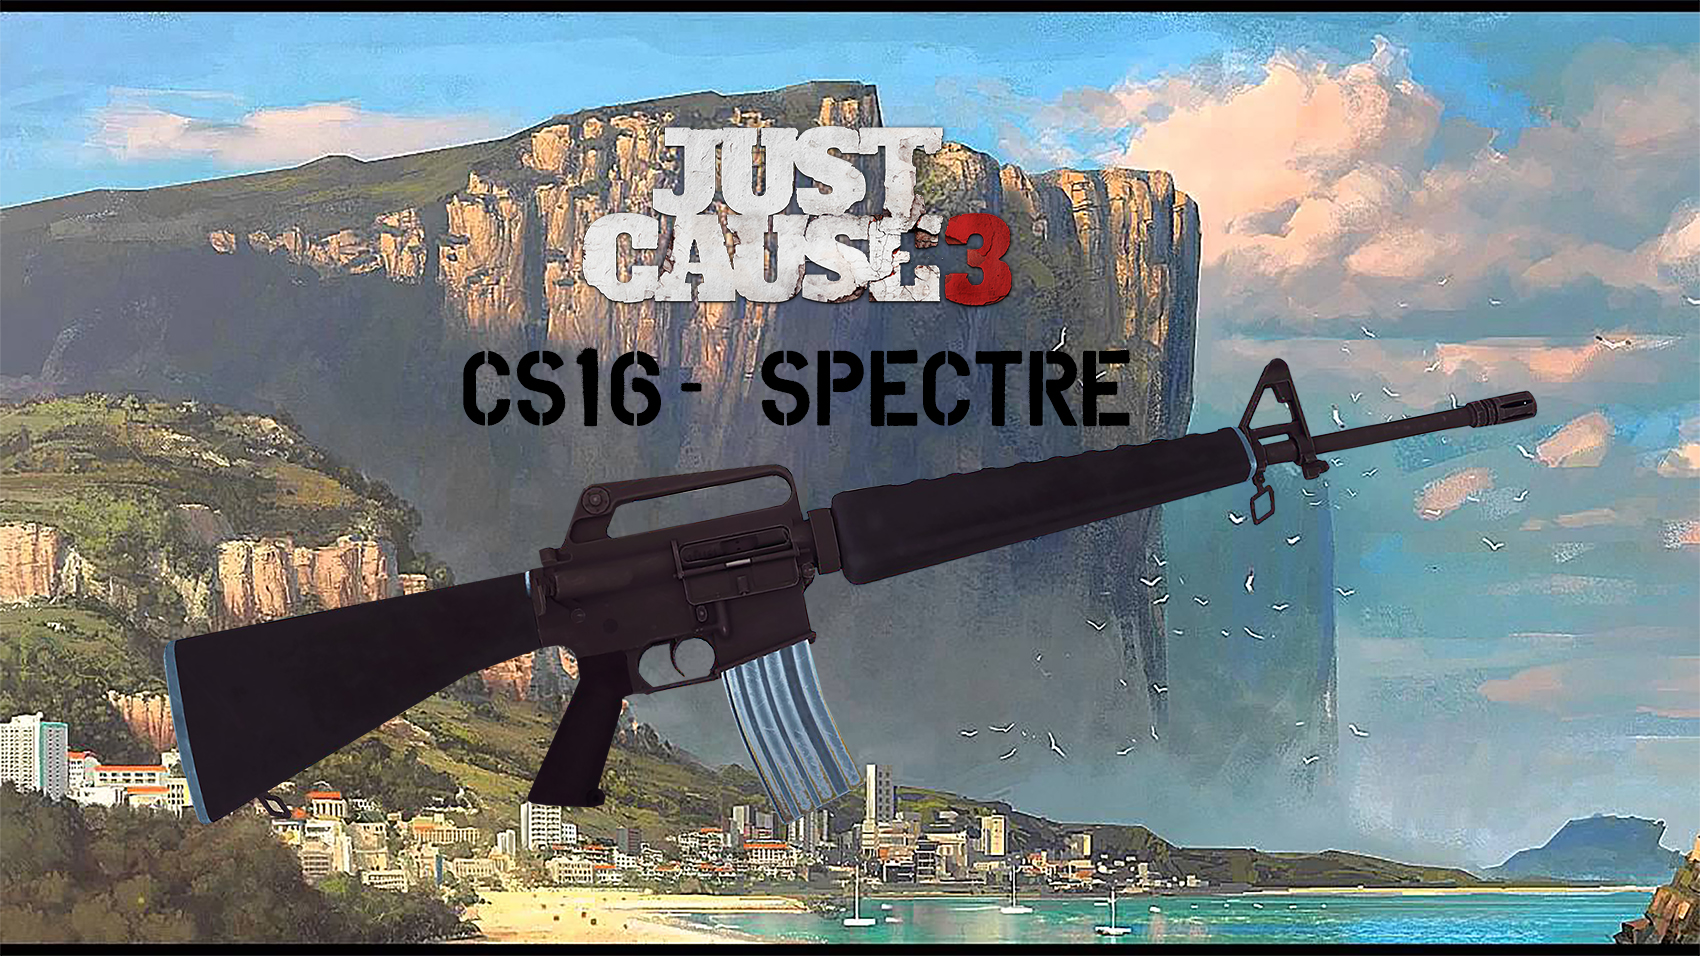 CS16 SPECTRE